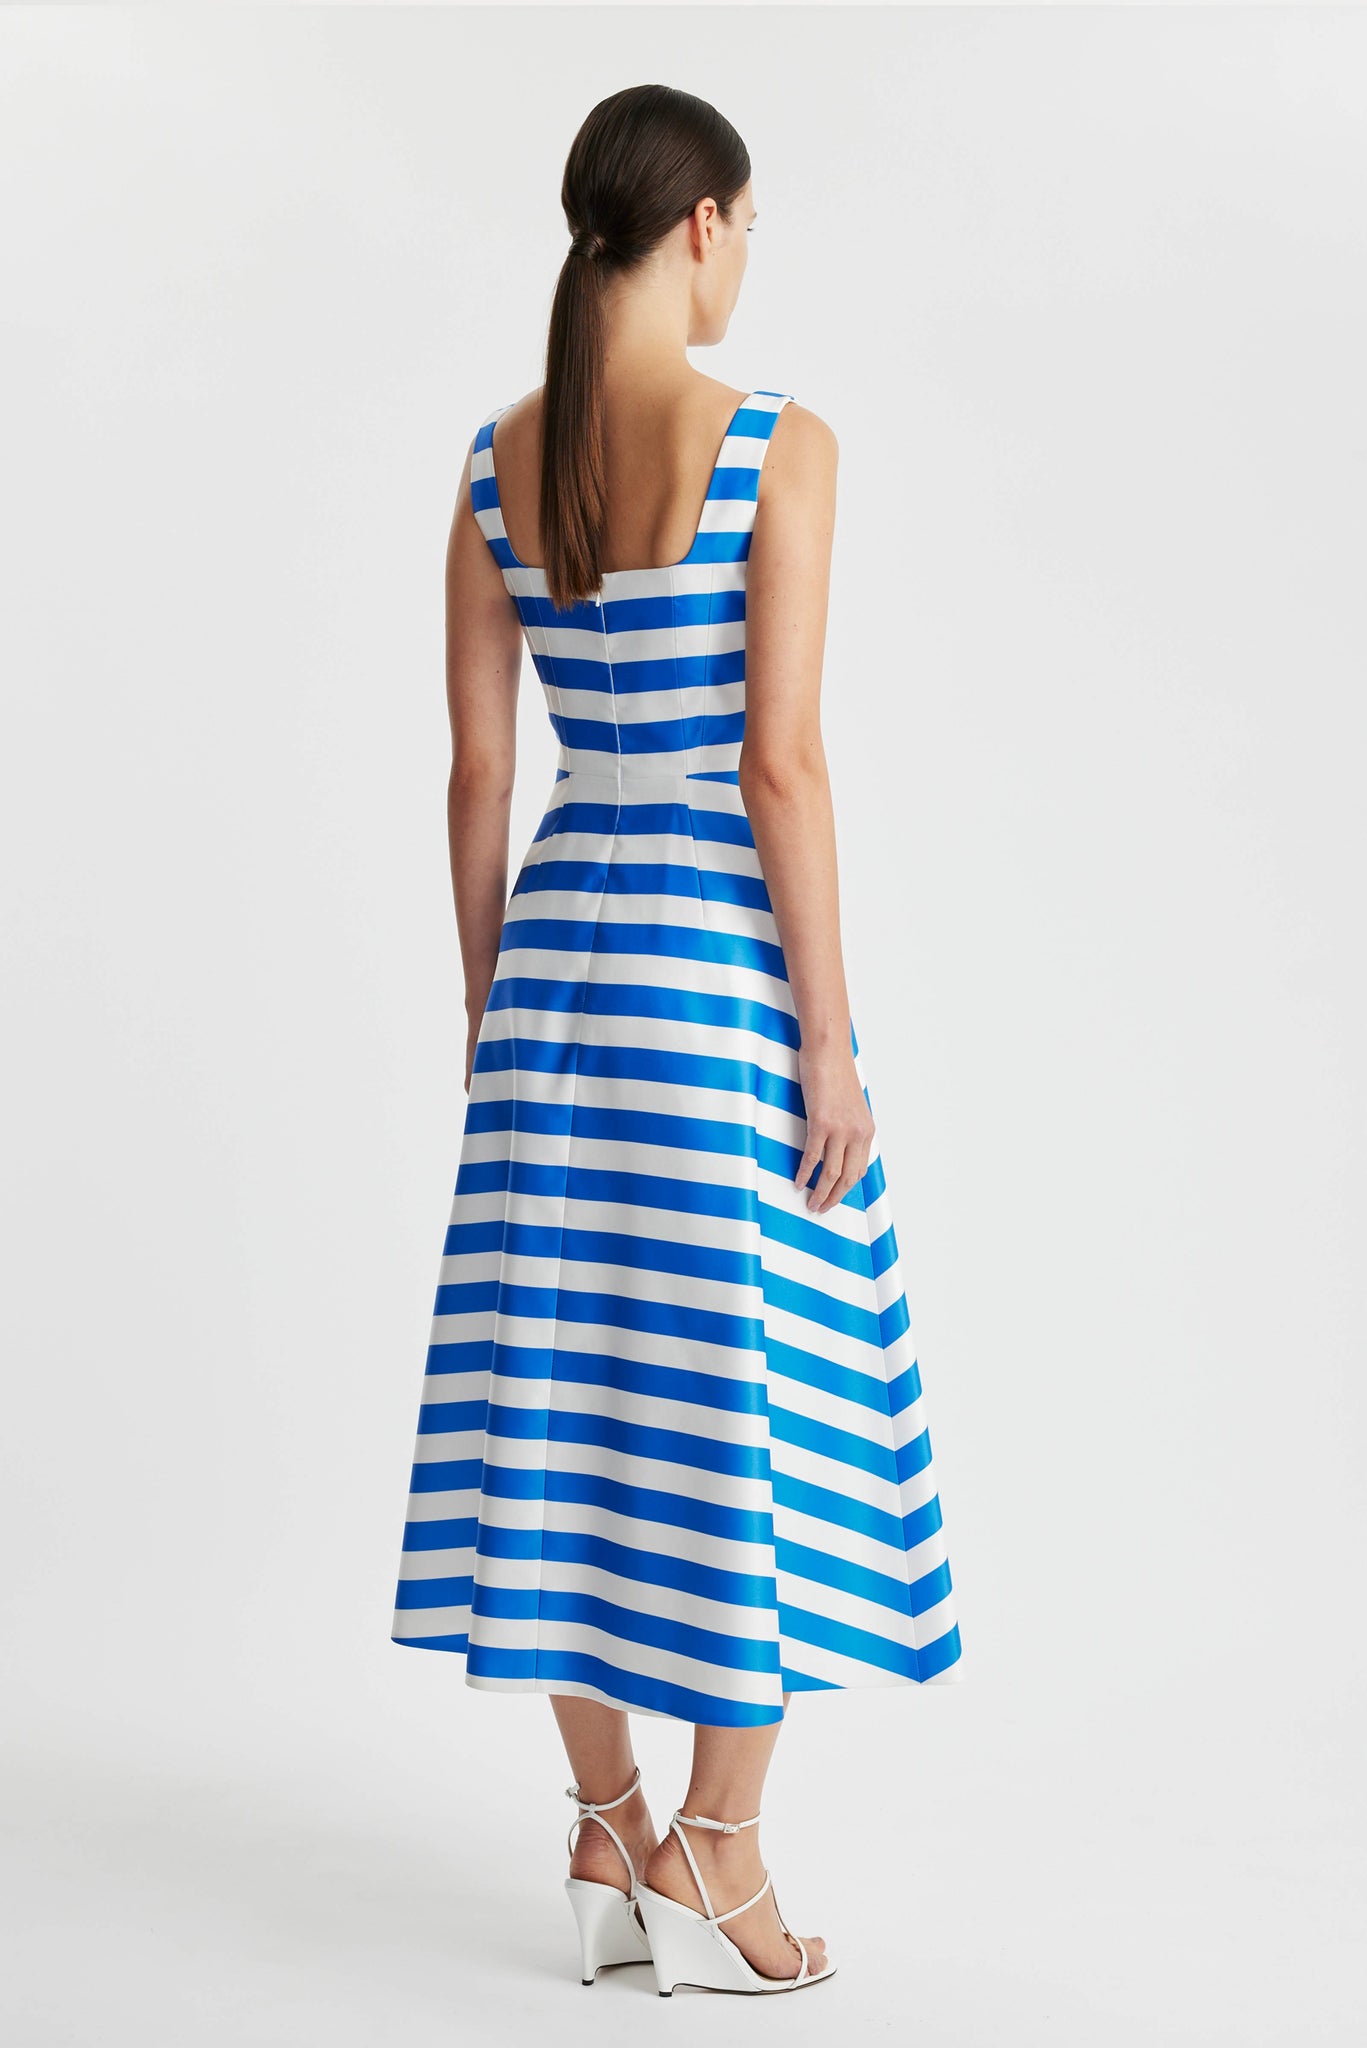 Shilo Dress In Blue Stripe Printed Twill | Emilia Wickstead